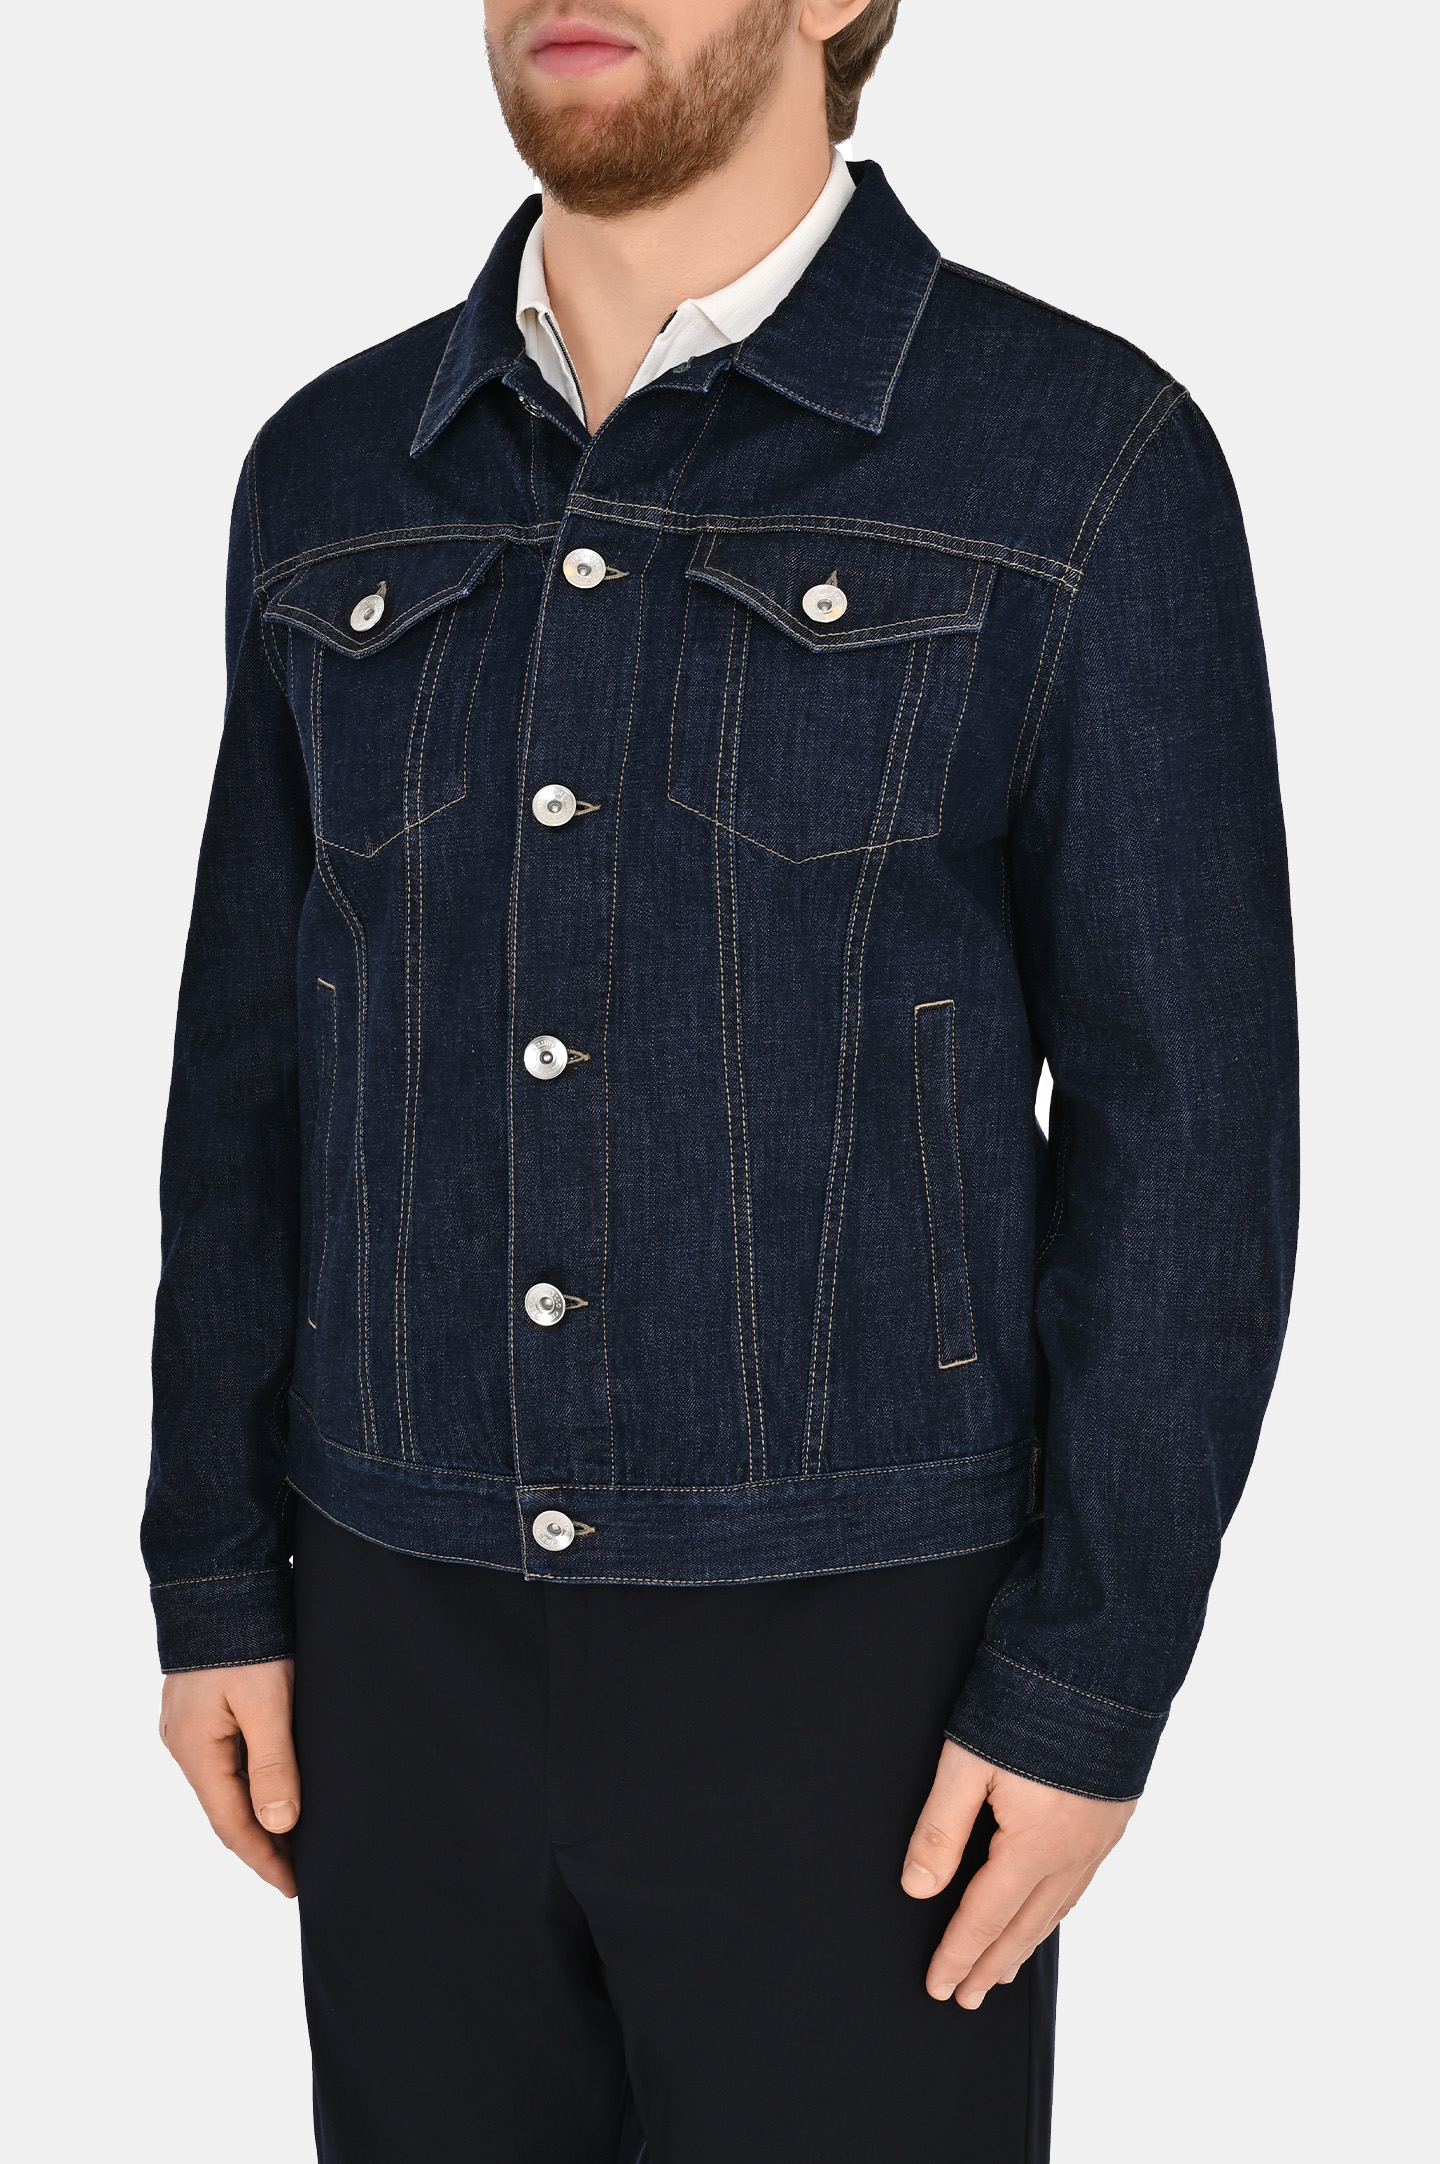 Джинсовая куртка с карманами BRUNELLO  CUCINELLI M0Z376896, цвет: Темно-синий, Мужской